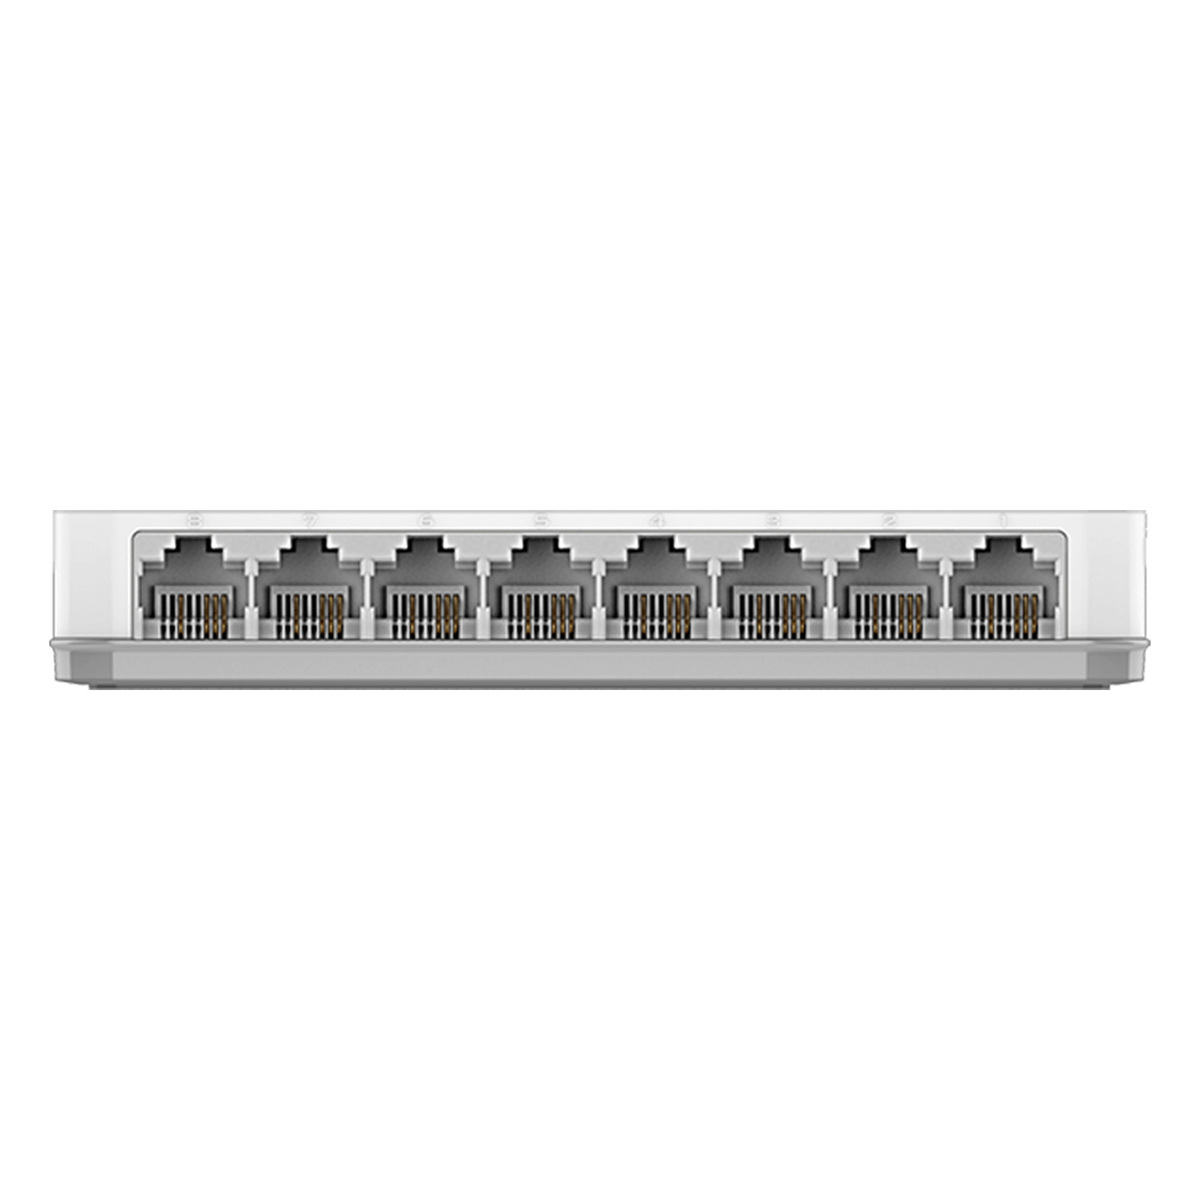 دي لينك محول شبكة 8 منافذ 10/100، أبيض، DES-1008A